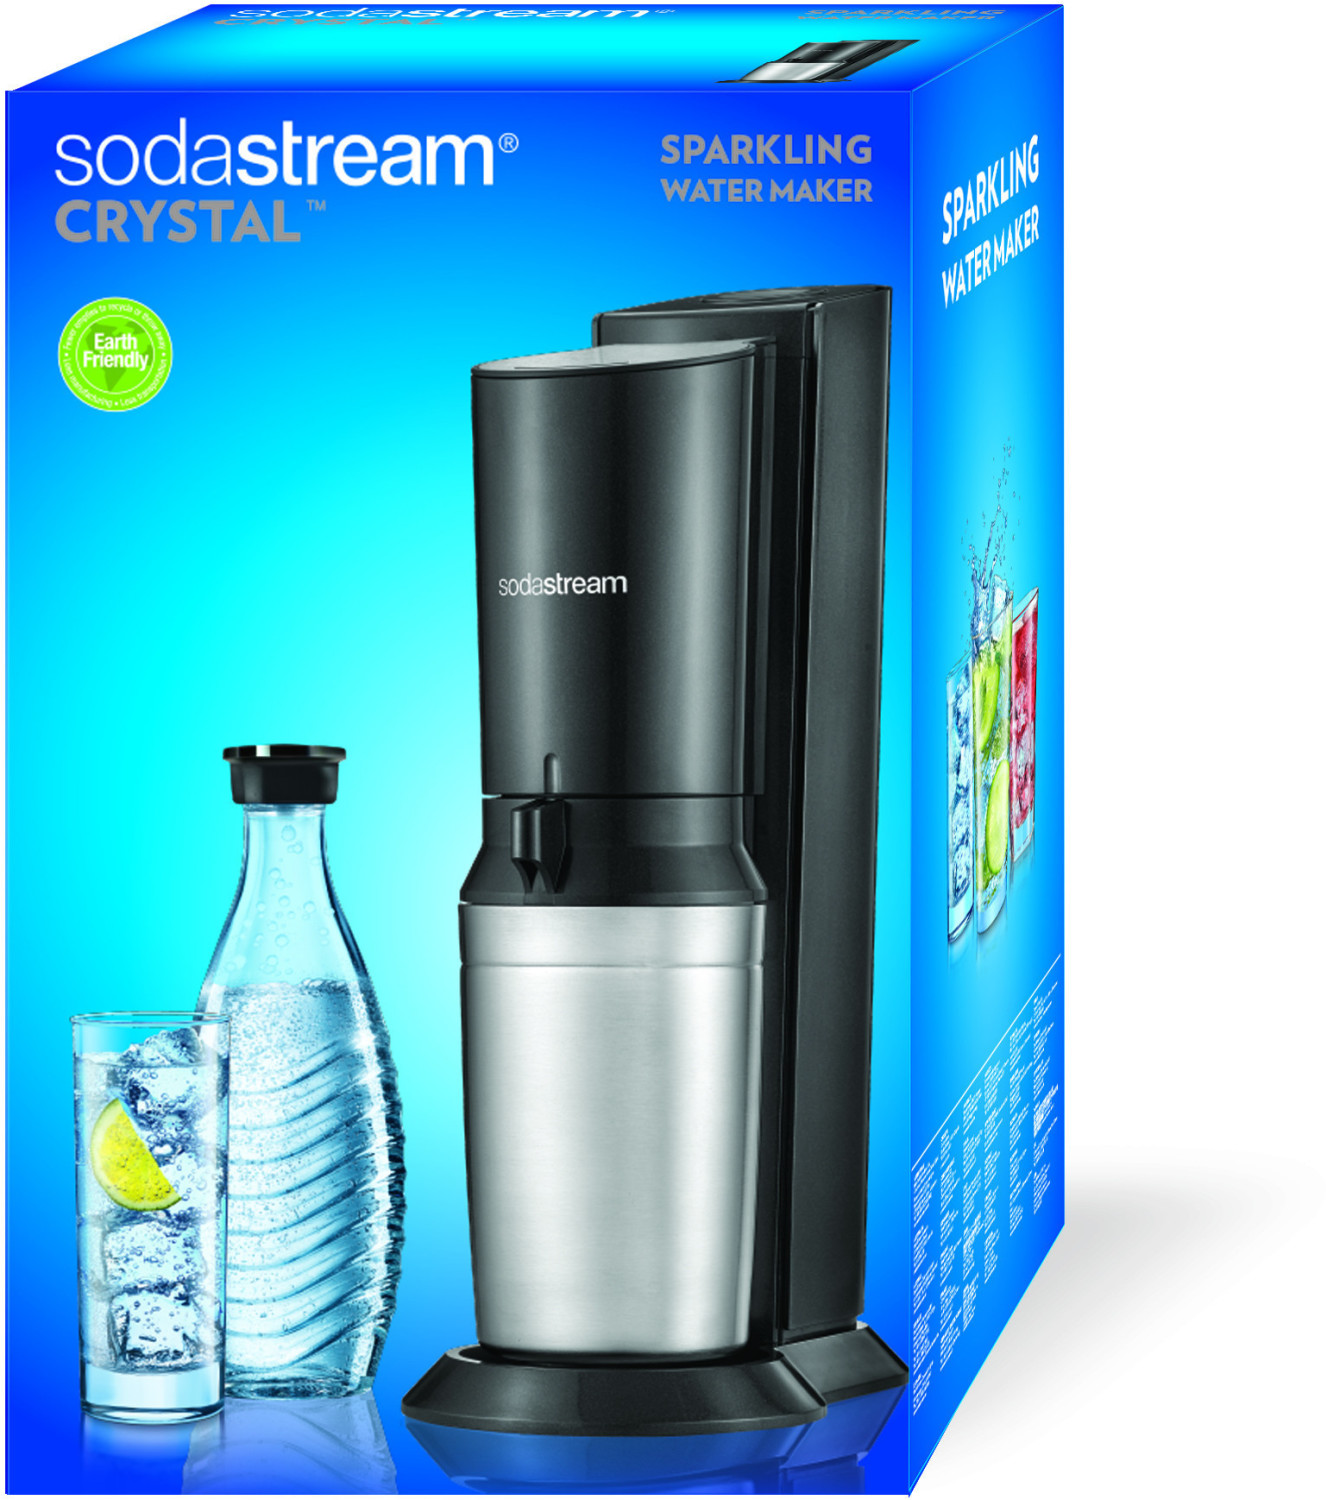 Sotel  SodaStream Duo Titan Umsteigerset - sans CO2 Zylinder